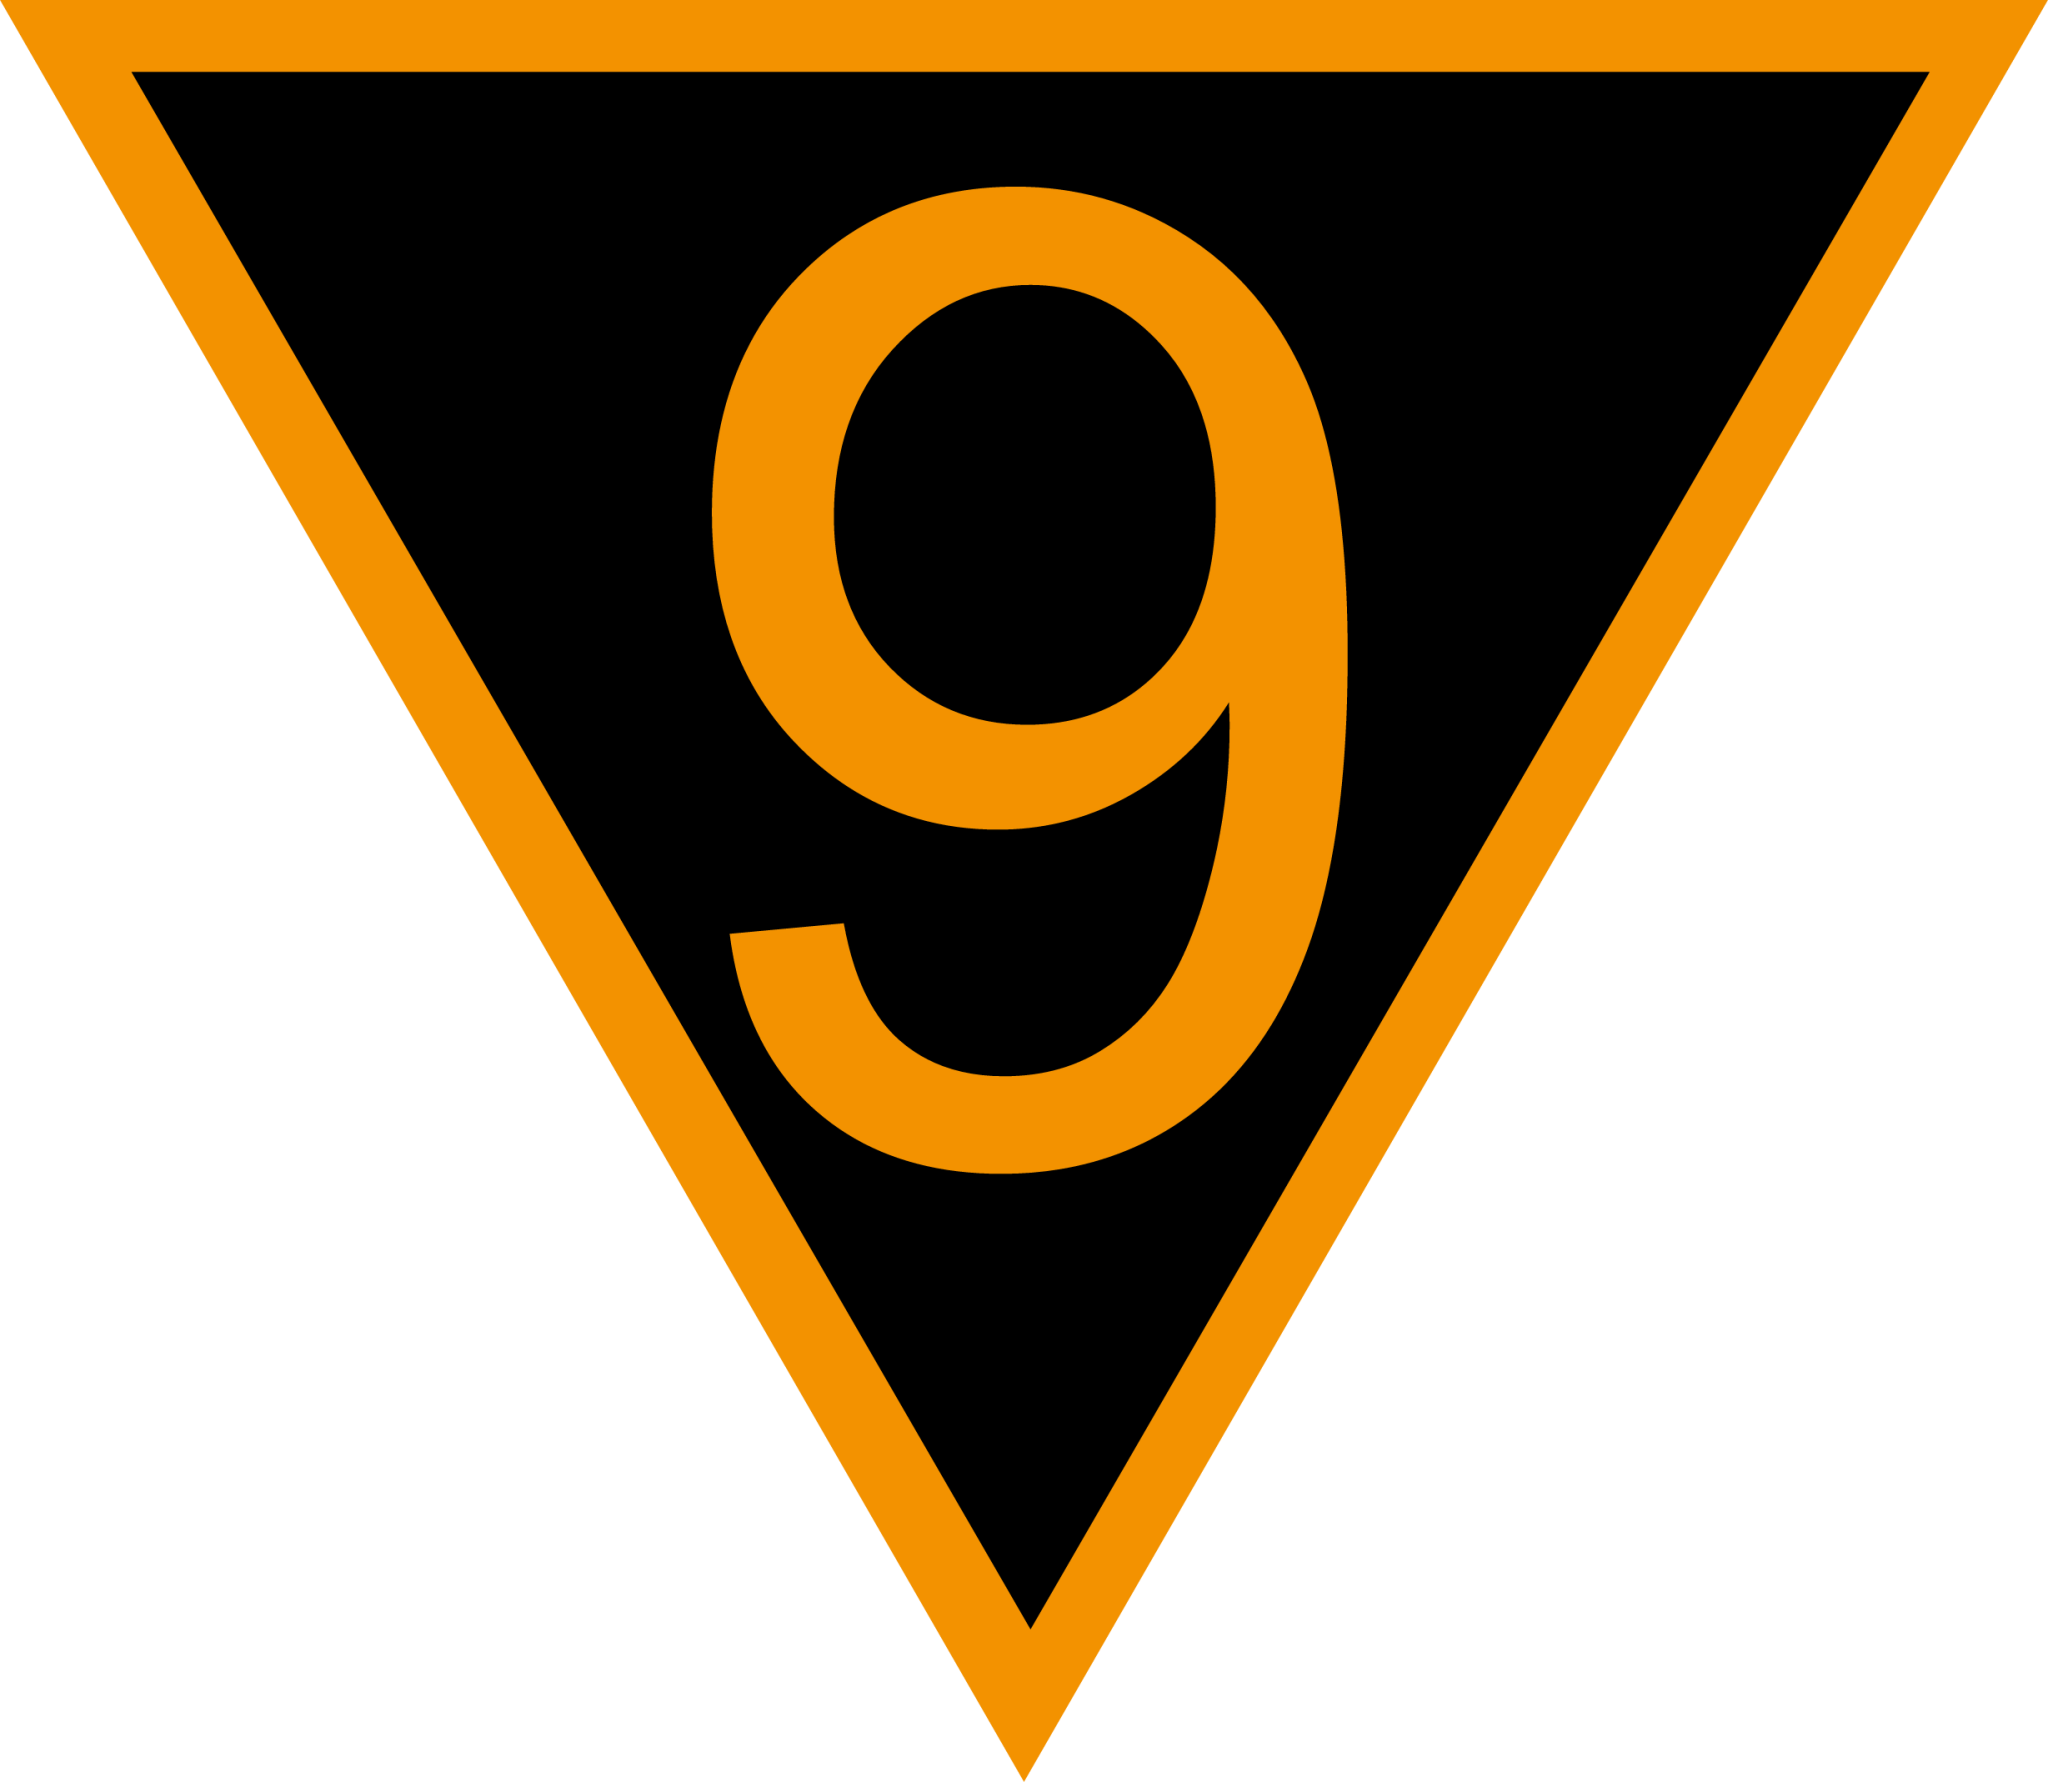 geschwindigkeitsvoranzeiger sign 90 icon